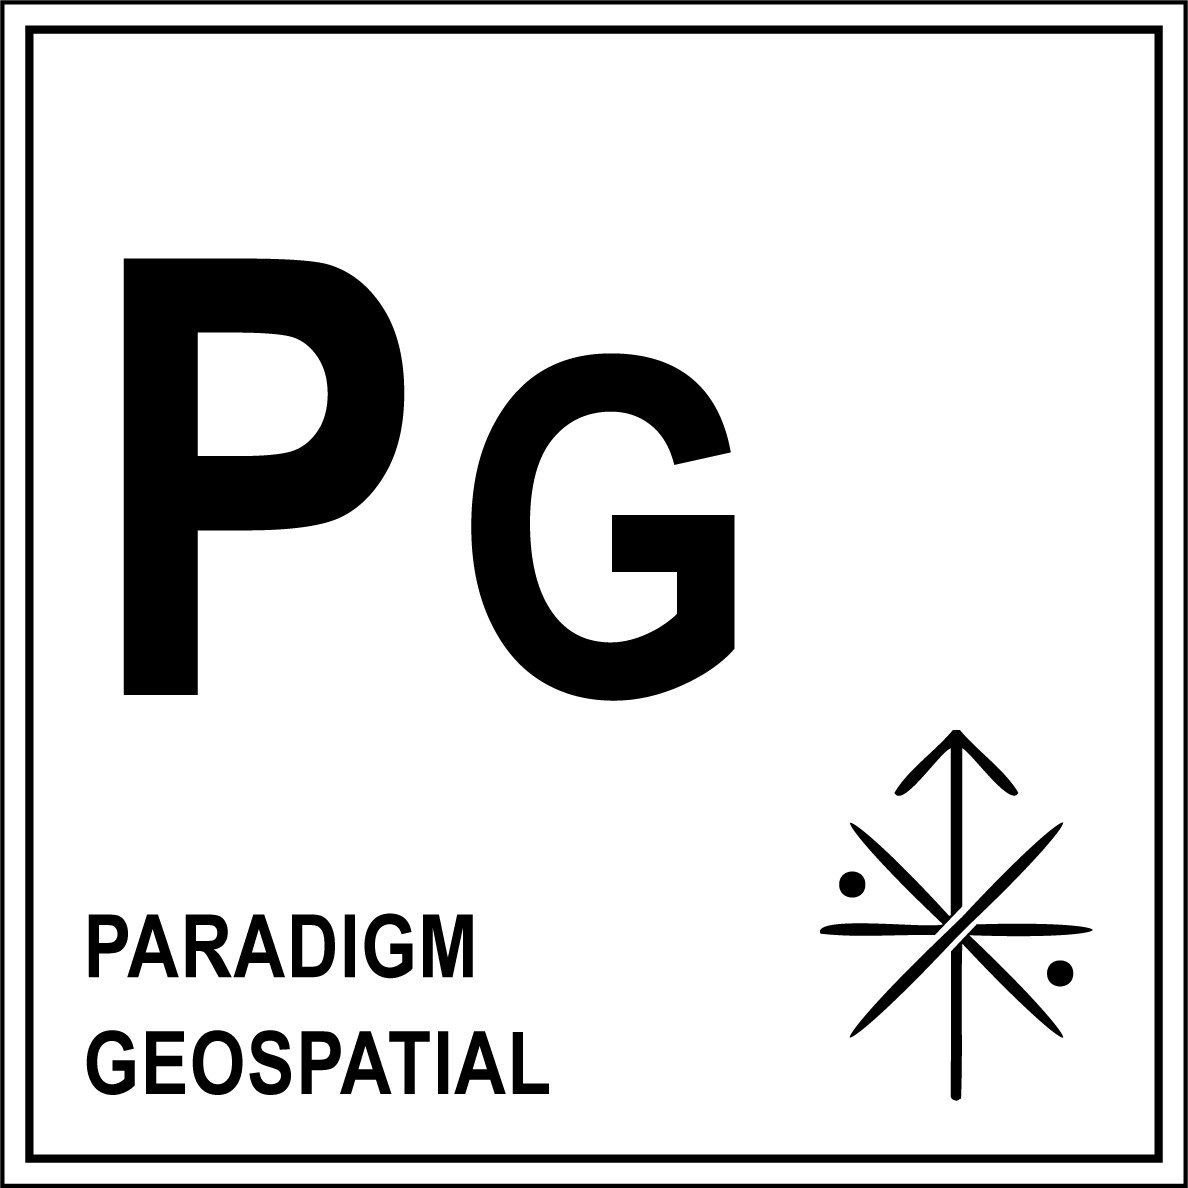 Paradigm Geospatial